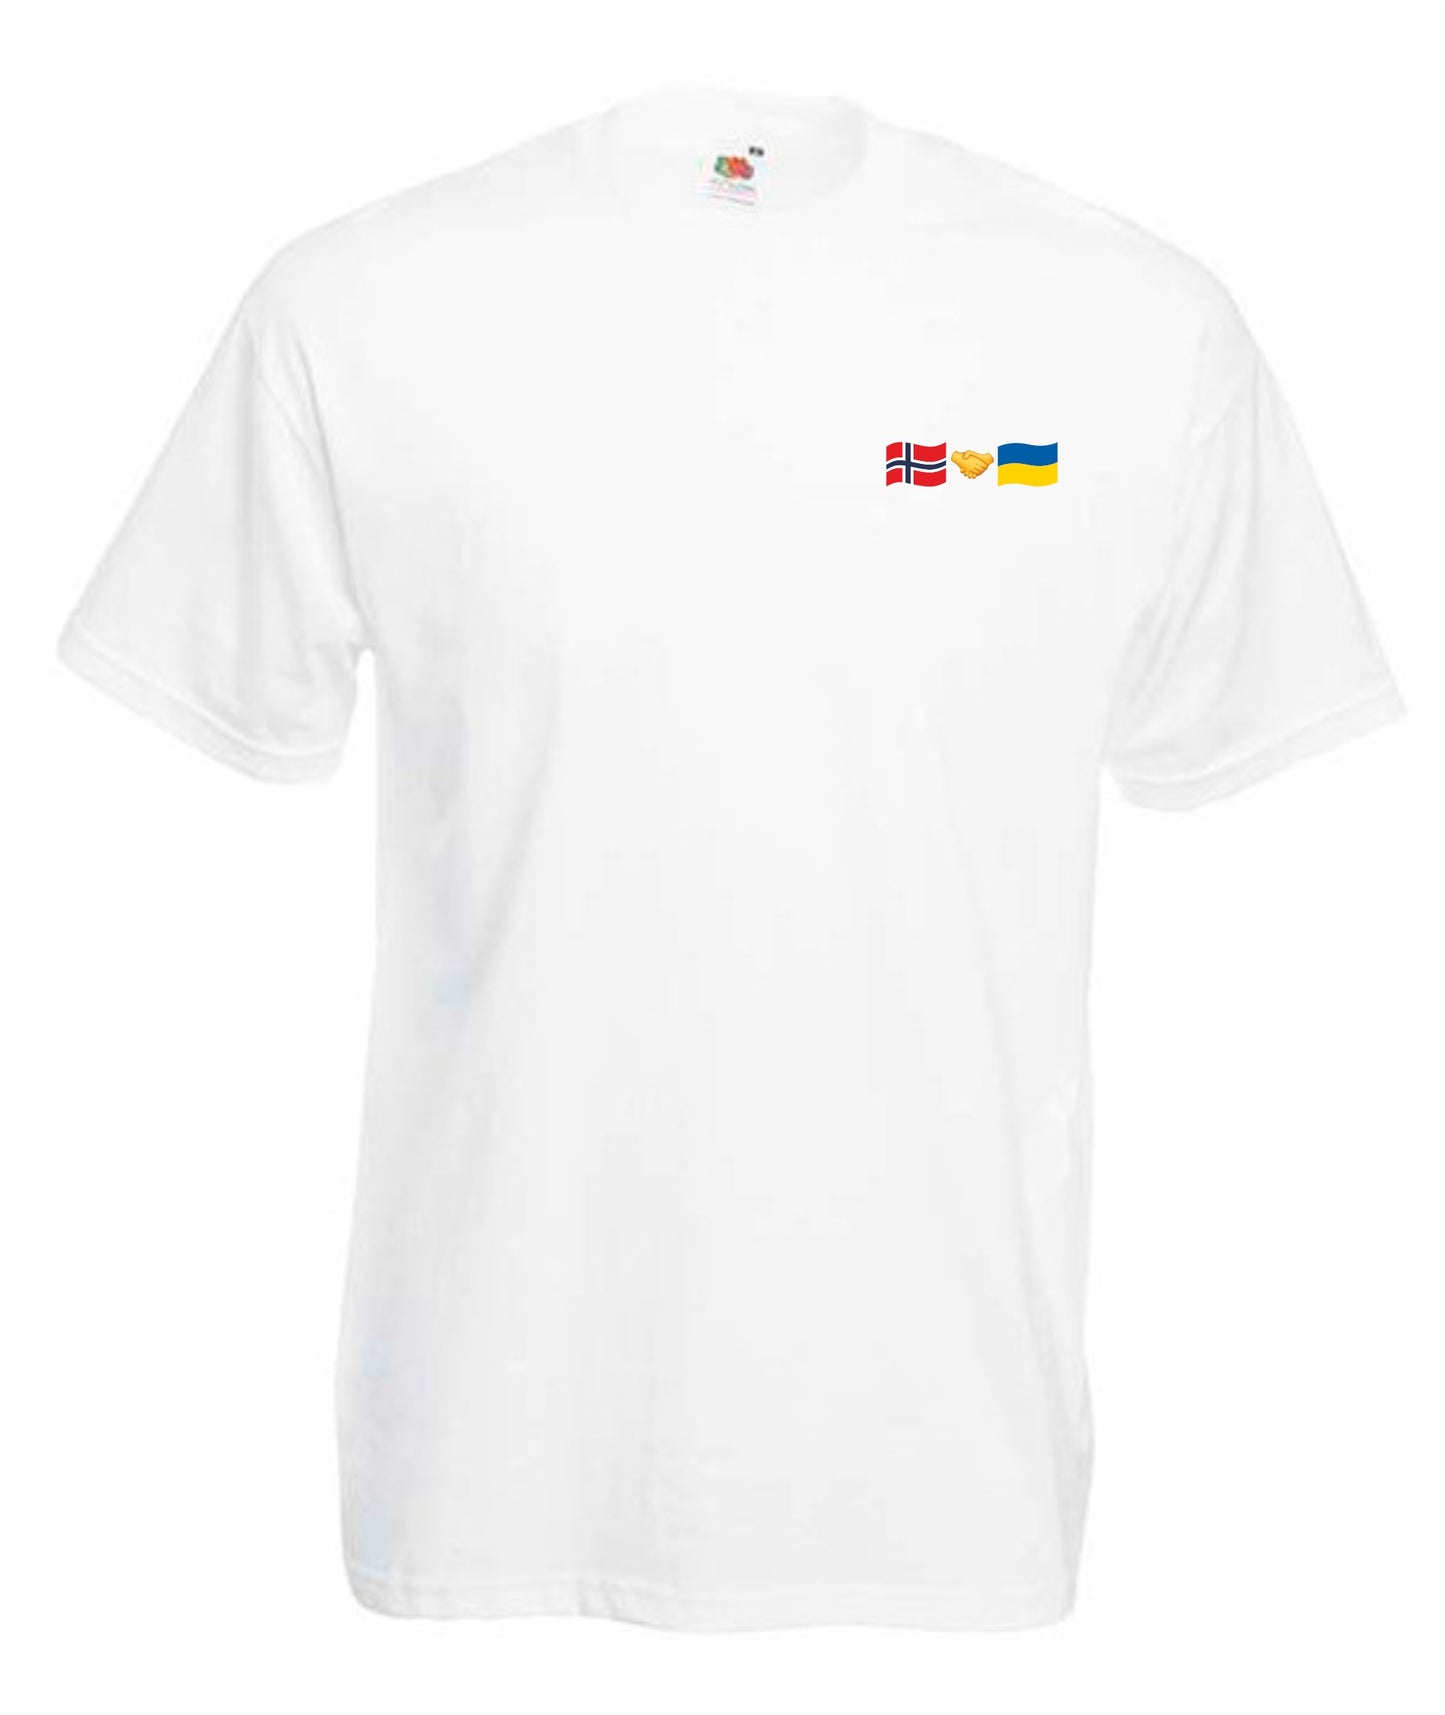 T-shirt Norway + Ukraine (small logo)